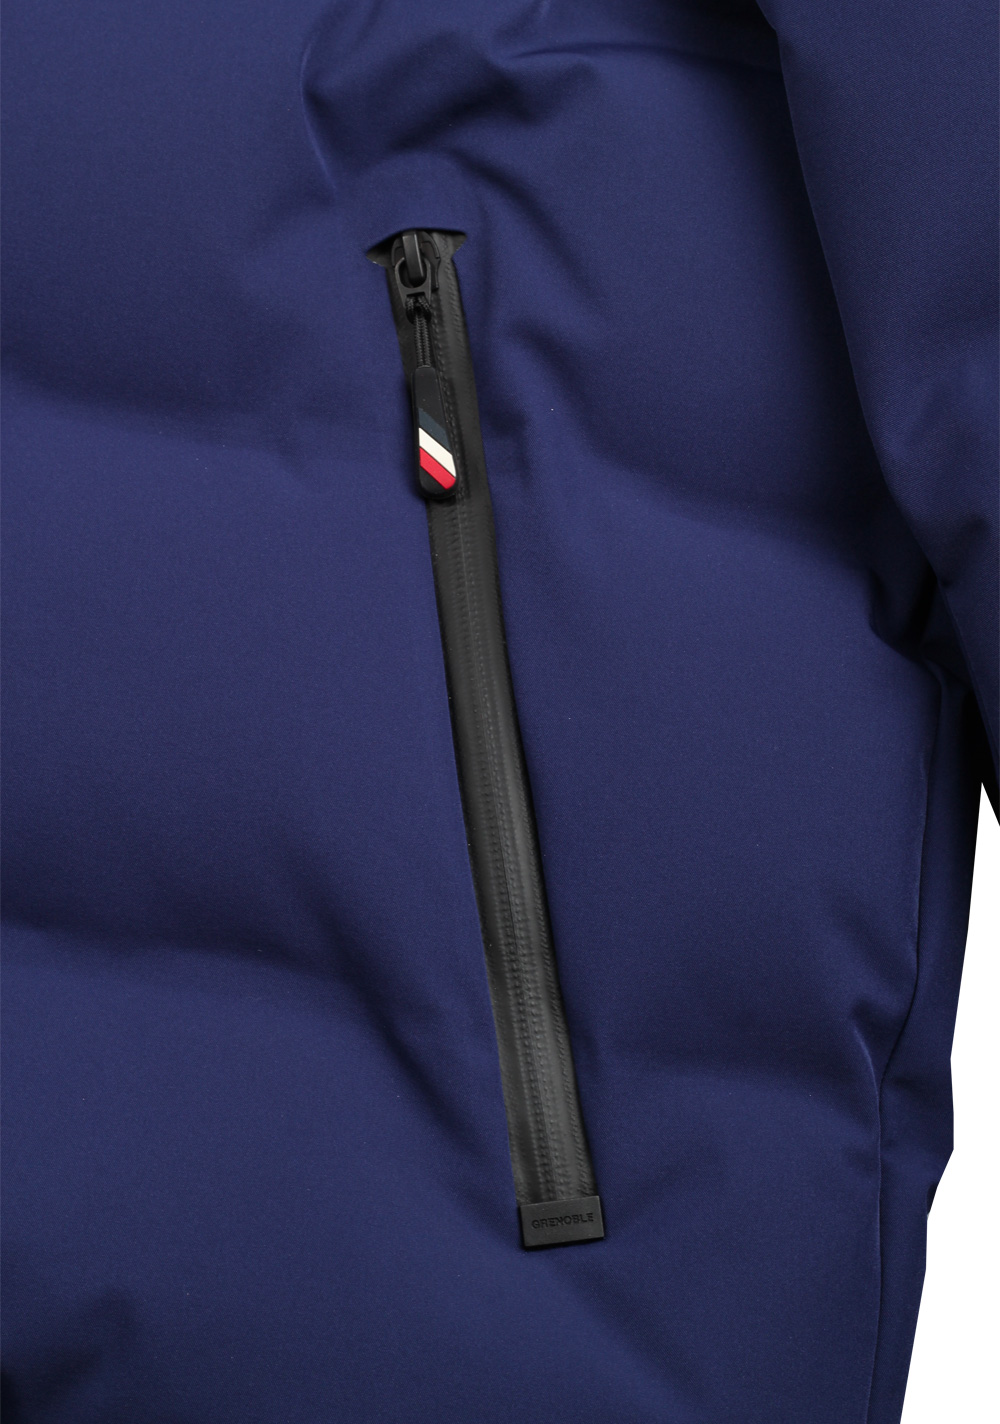 Moncler Grenoble Montgetech Jacket Coat Size 5 / XL / 54 / 44 U.S ...